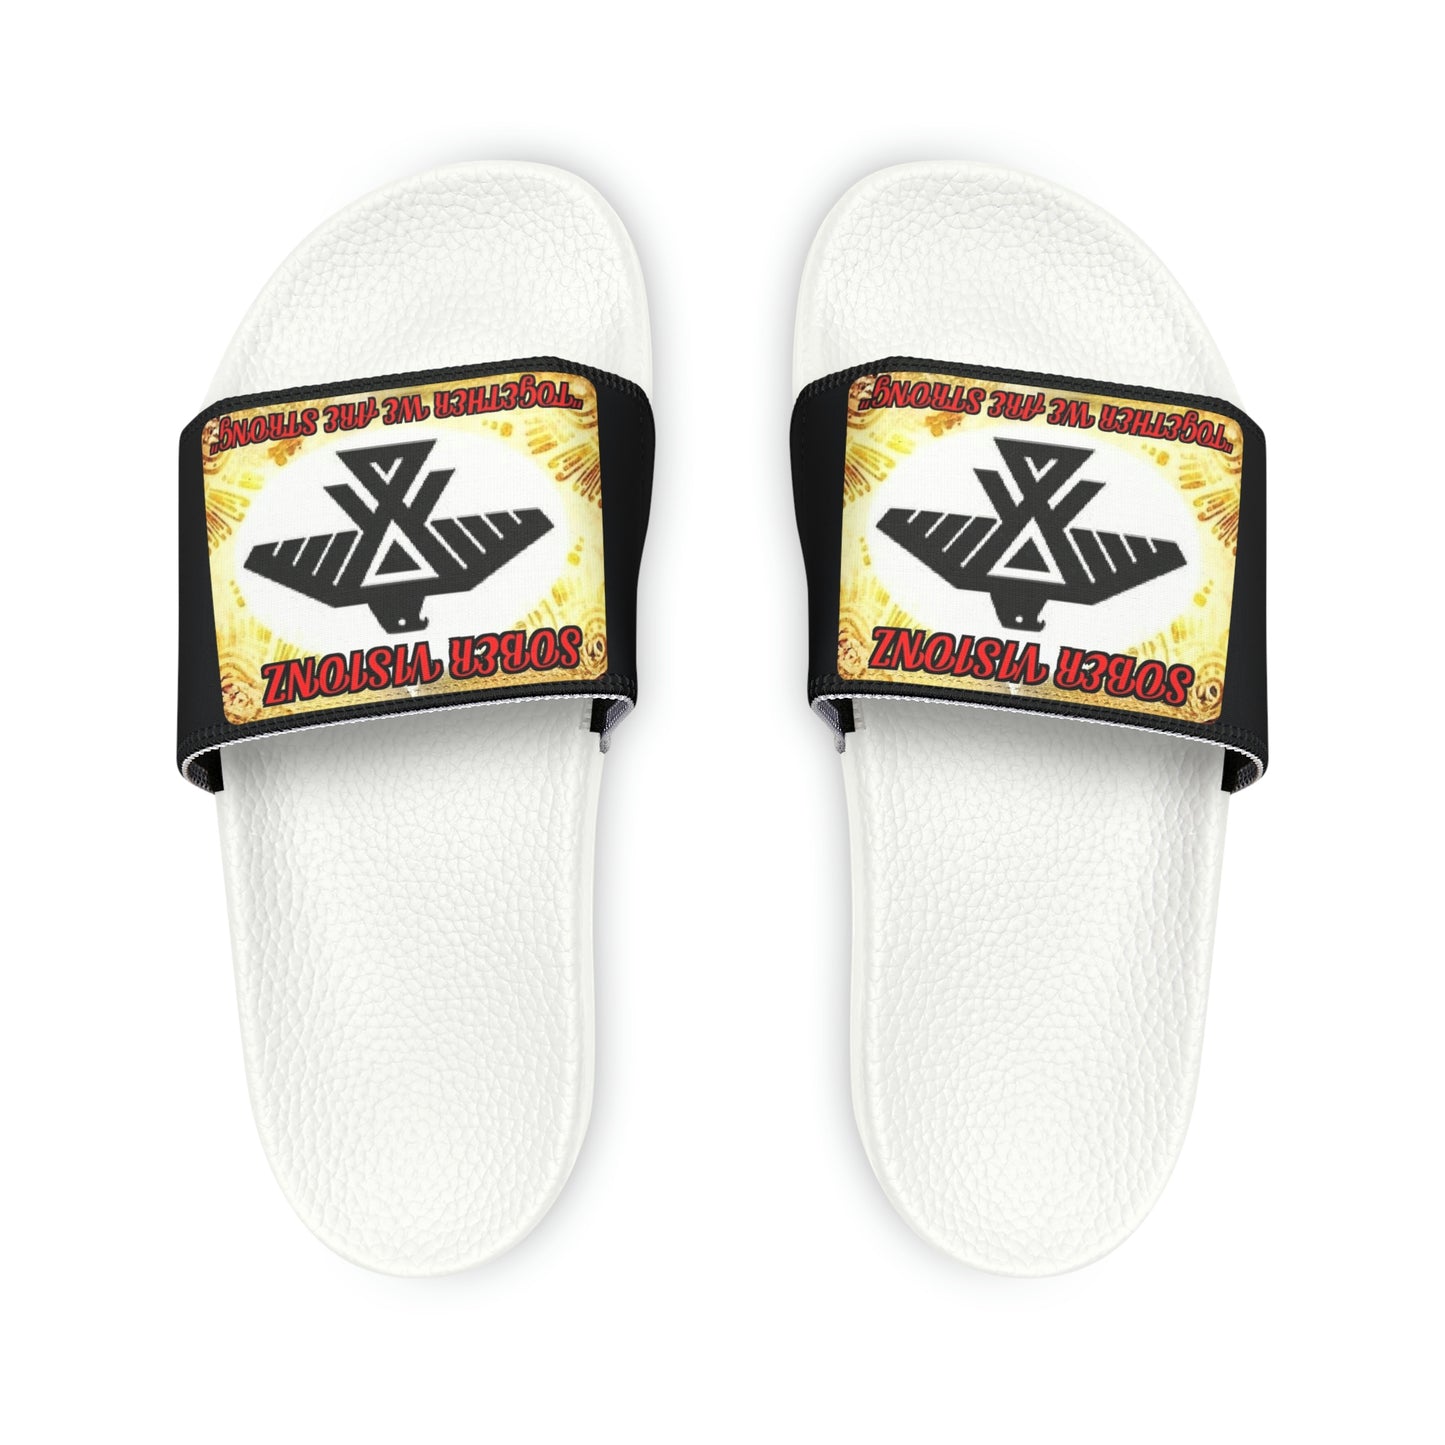 Men's Sober Visionz Sandals